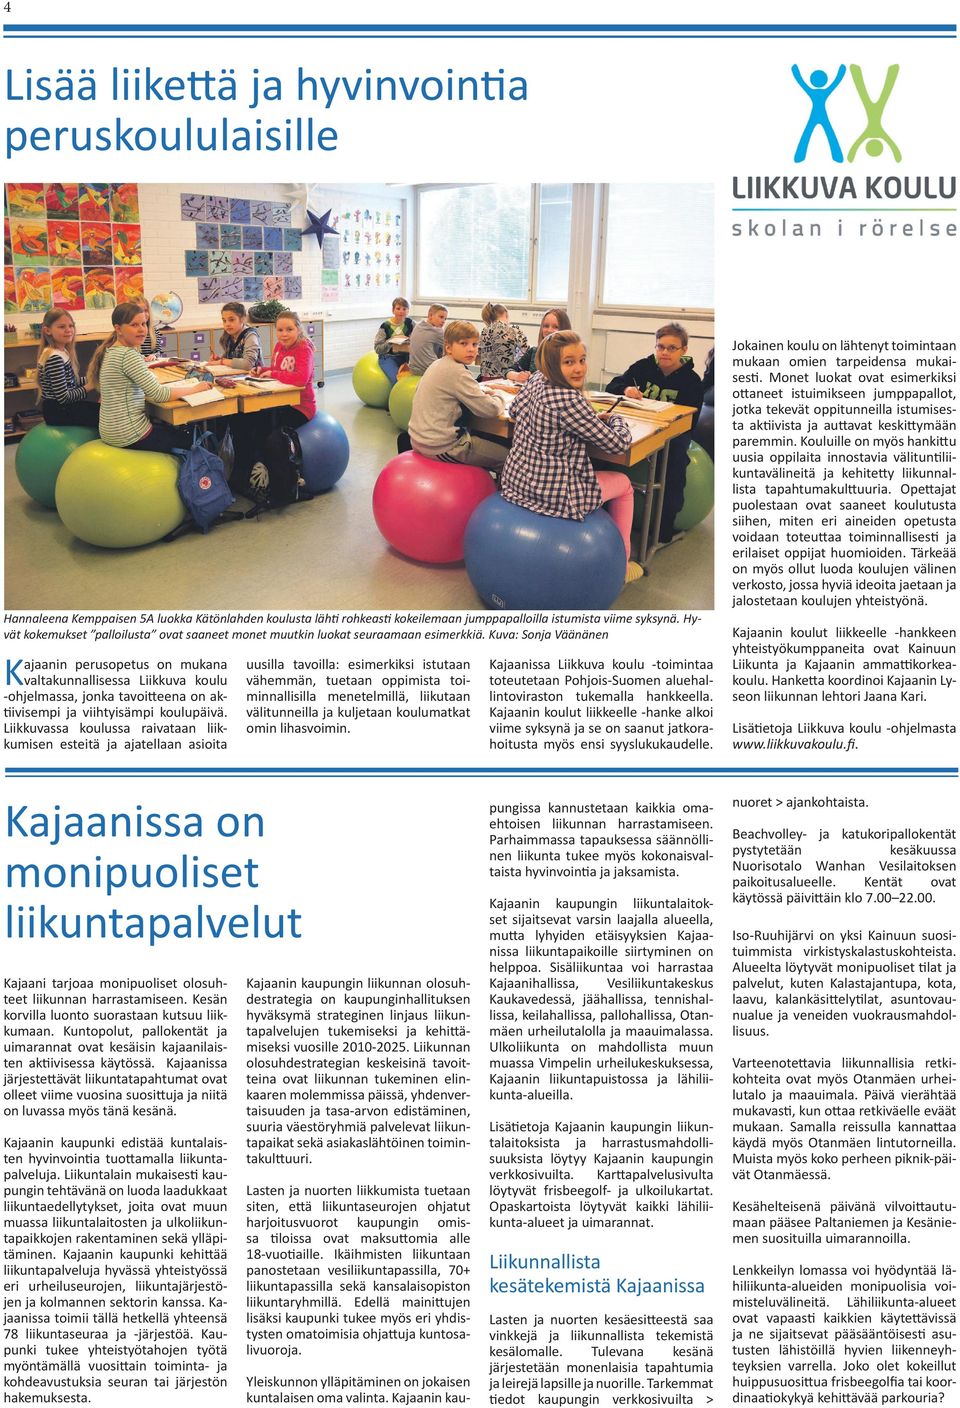 Kuva: Sonja Väänänen Kajaanin perusopetus on mukana valtakunnallisessa Liikkuva koulu -ohjelmassa, jonka tavoitteena on aktiivisempi ja viihtyisämpi koulupäivä.